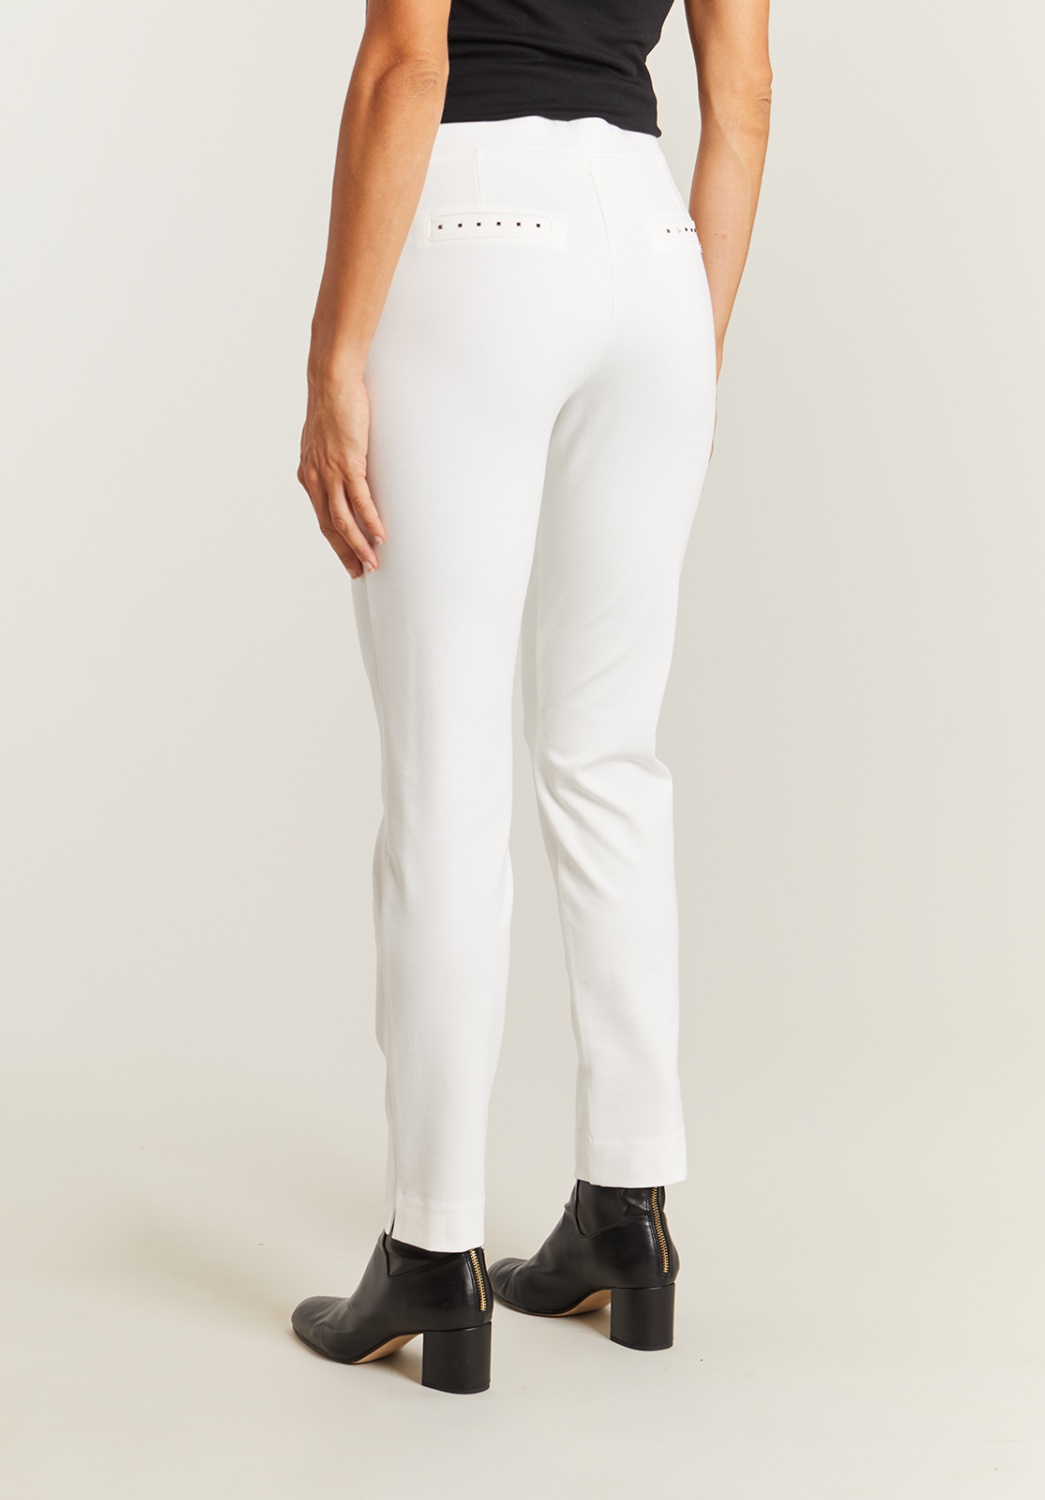 pantalon de punto blanco